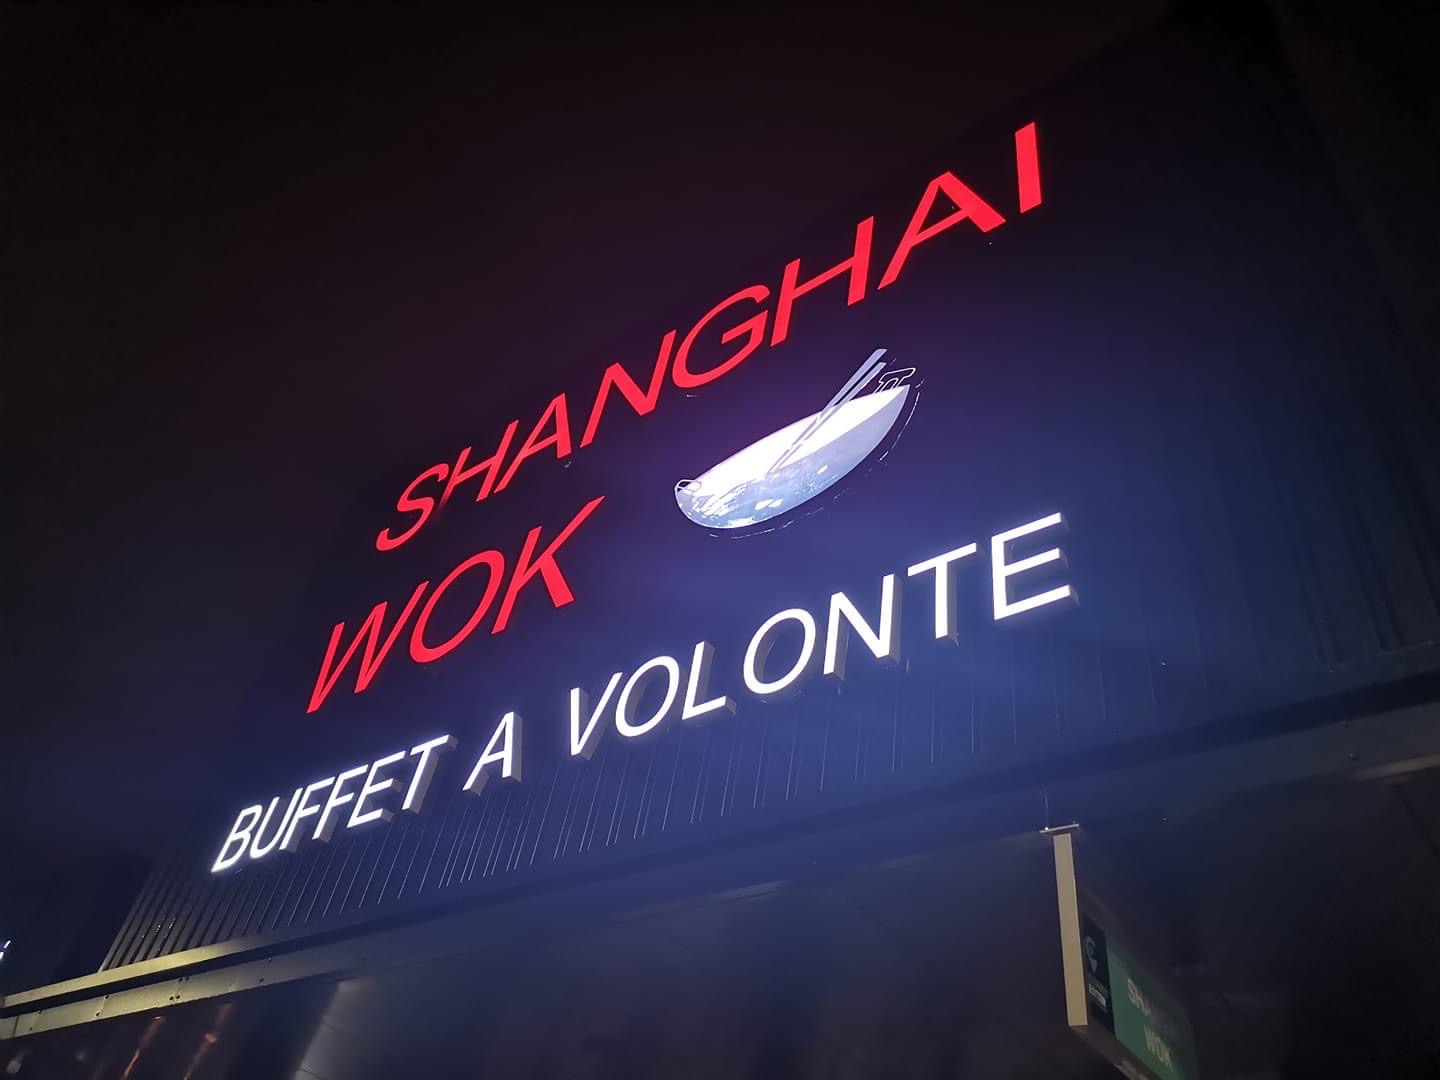 Logo Shanghai wok